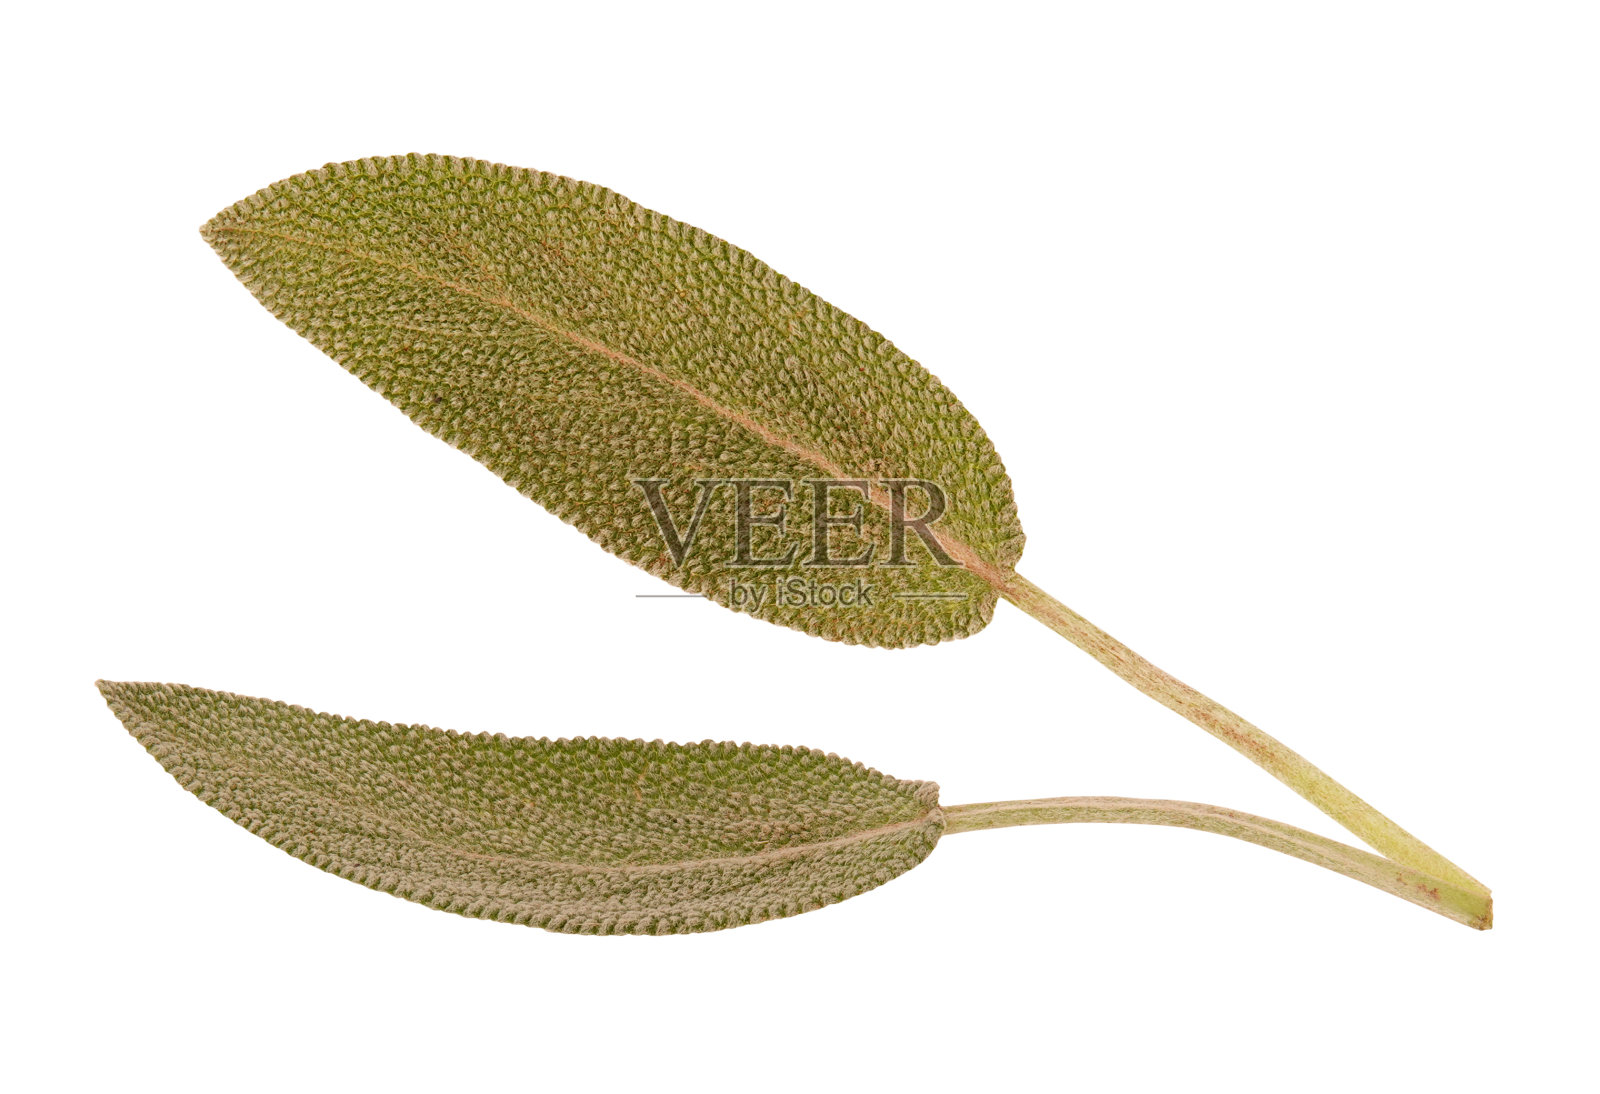 普通鼠尾草叶孤立在白色背景上。天然鼠尾草植物概念。微距特写摄影照片摄影图片